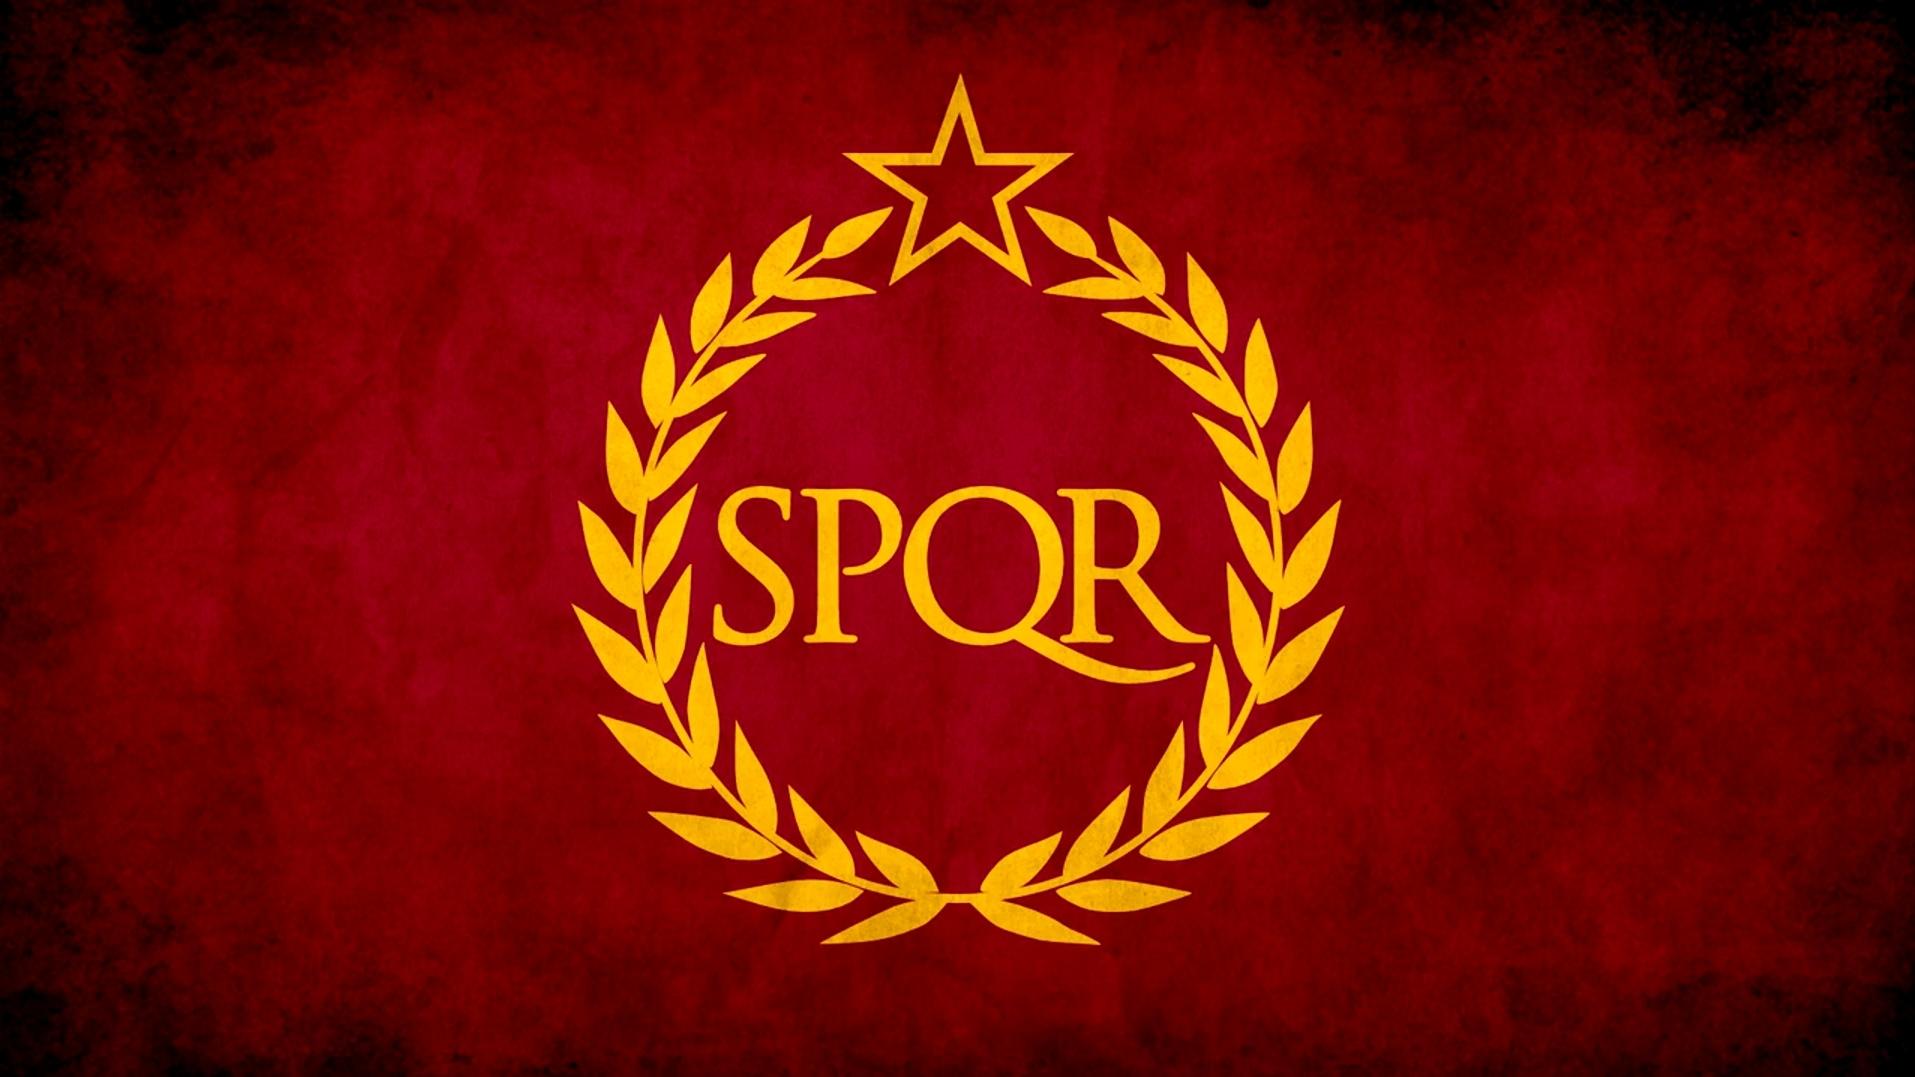 【国家旗帜】神圣罗马帝国的历代国旗和主要邦国的旗帜 - 哔哩哔哩